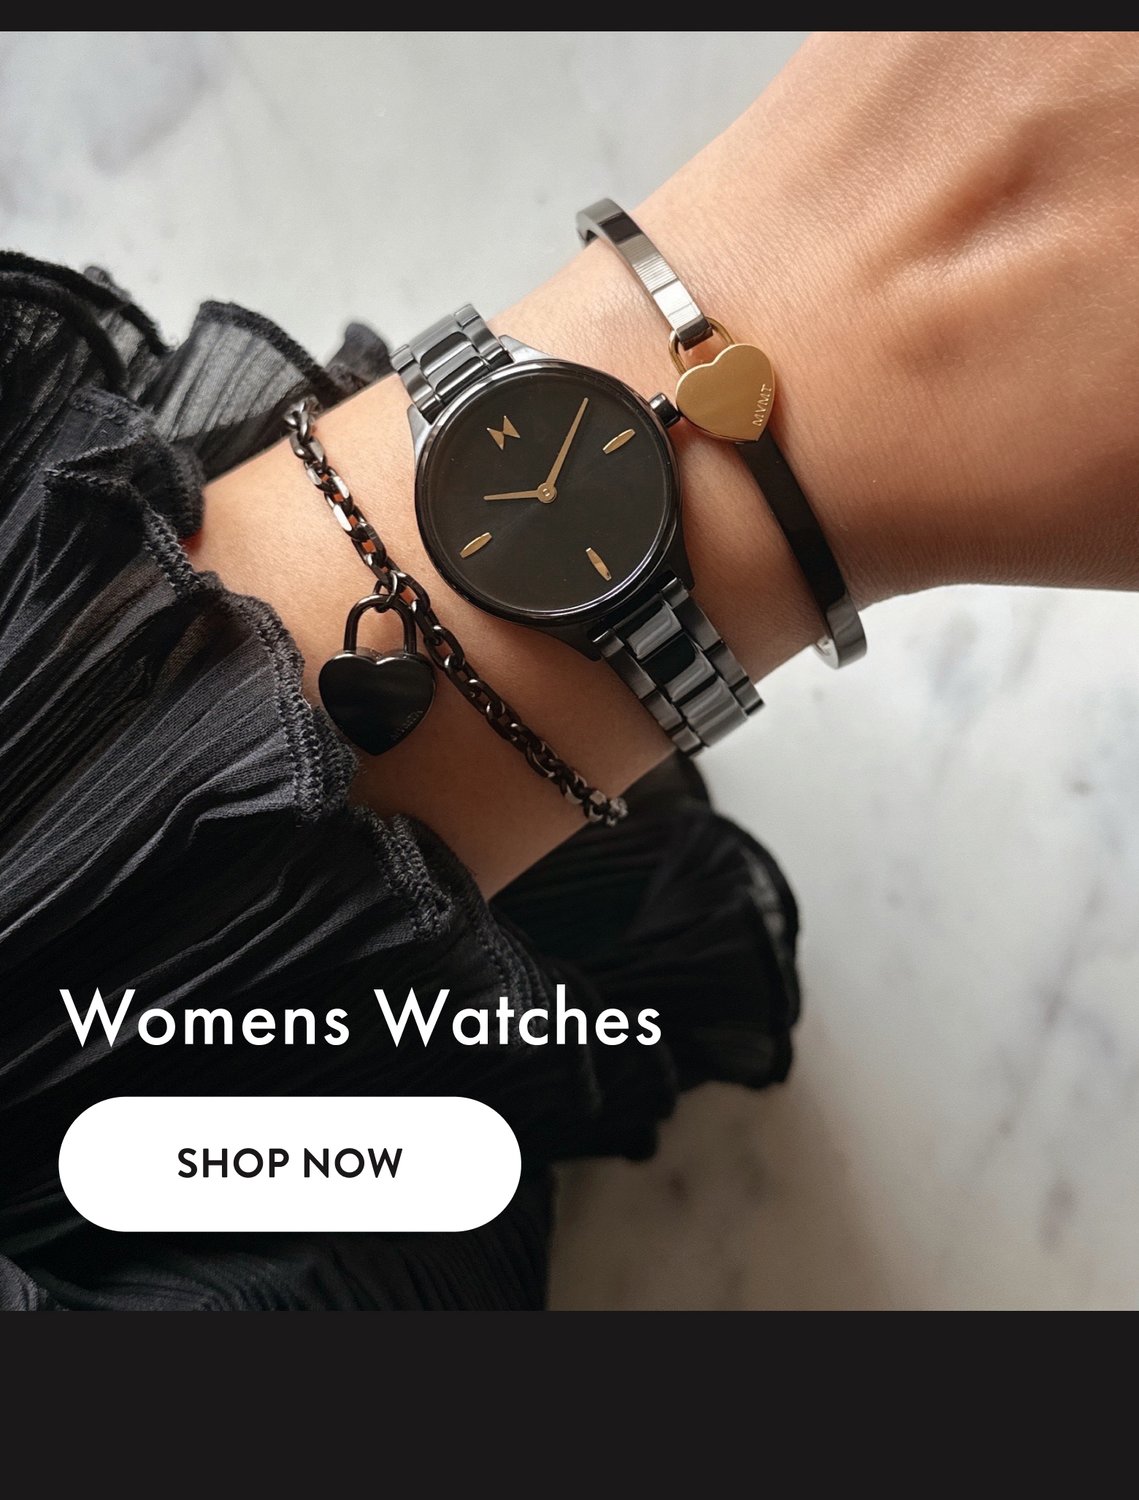 MVMT women's watches - watch on wrist